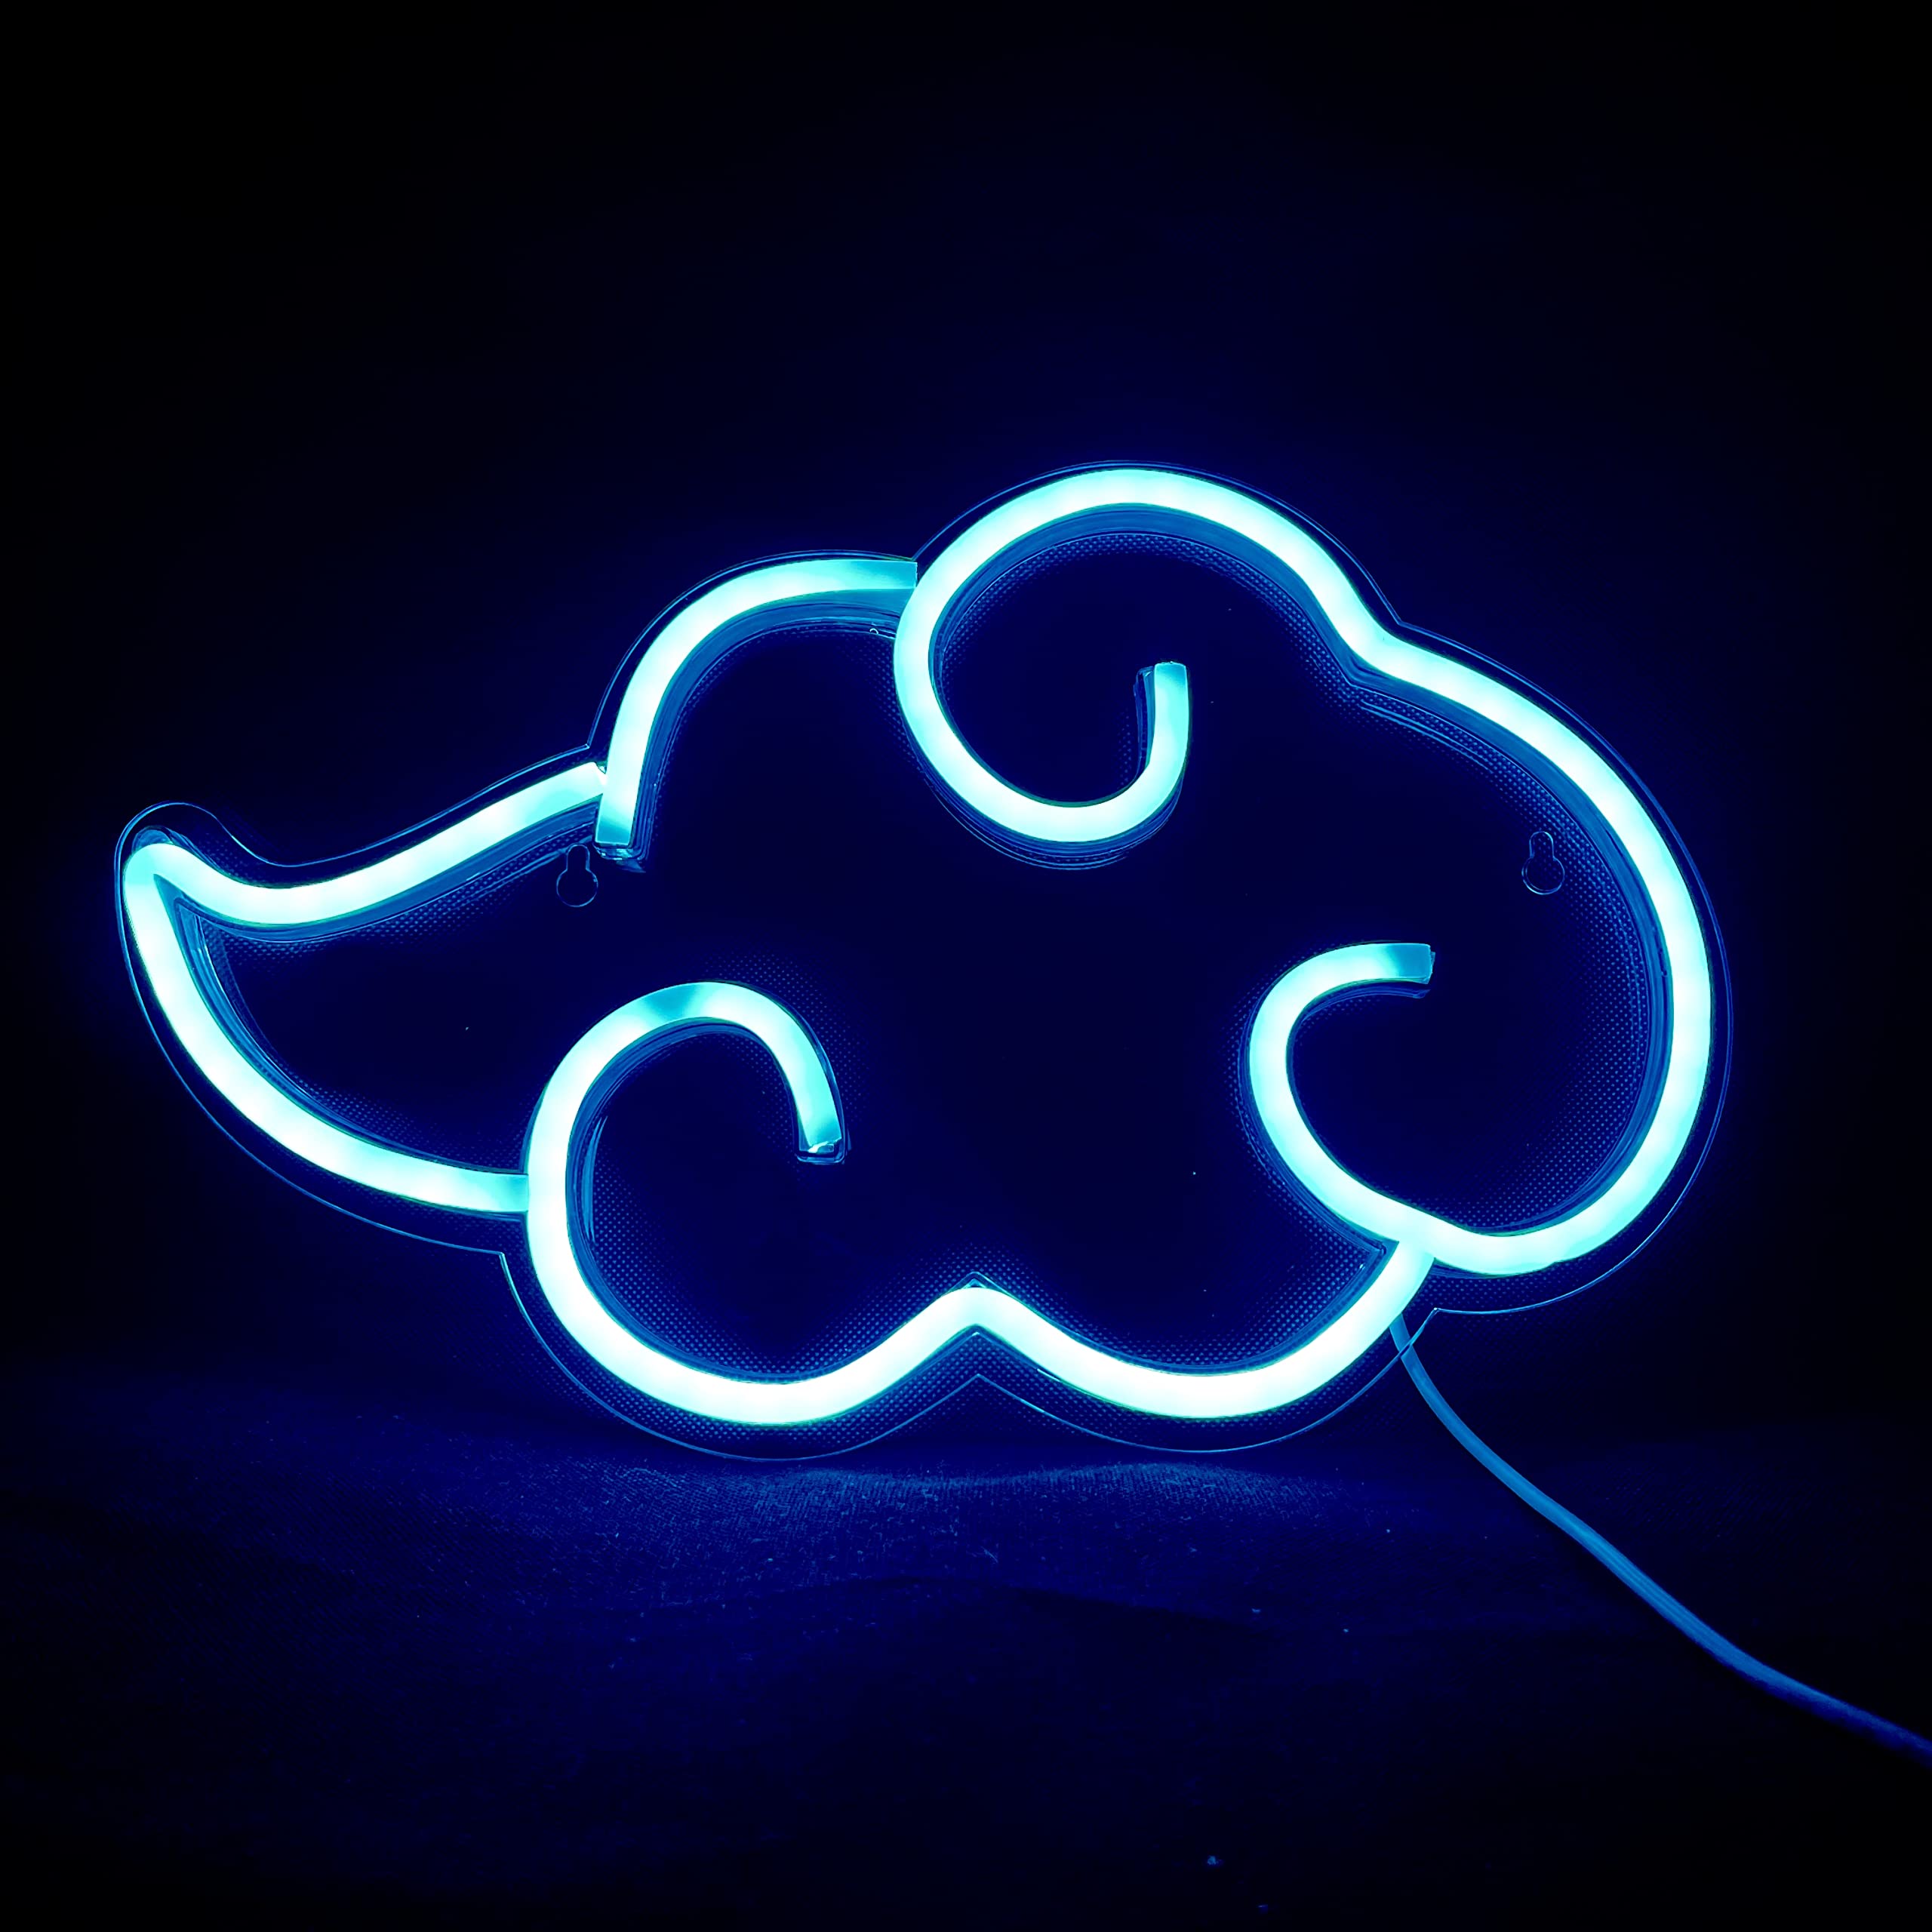  Neon Coole Hintergrundbild 2560x2560. Anime Wolke Neonschild für Wanddekoration Coole LED Lichter 12x7 Zoll USB Powered Neon Schilder für Schlafzimmer, Spielzimmer, Wohnzimmer, Party Dekoration, Geschenk für Jungen, Mädchen (blau) : Amazon.de: Beleuchtung